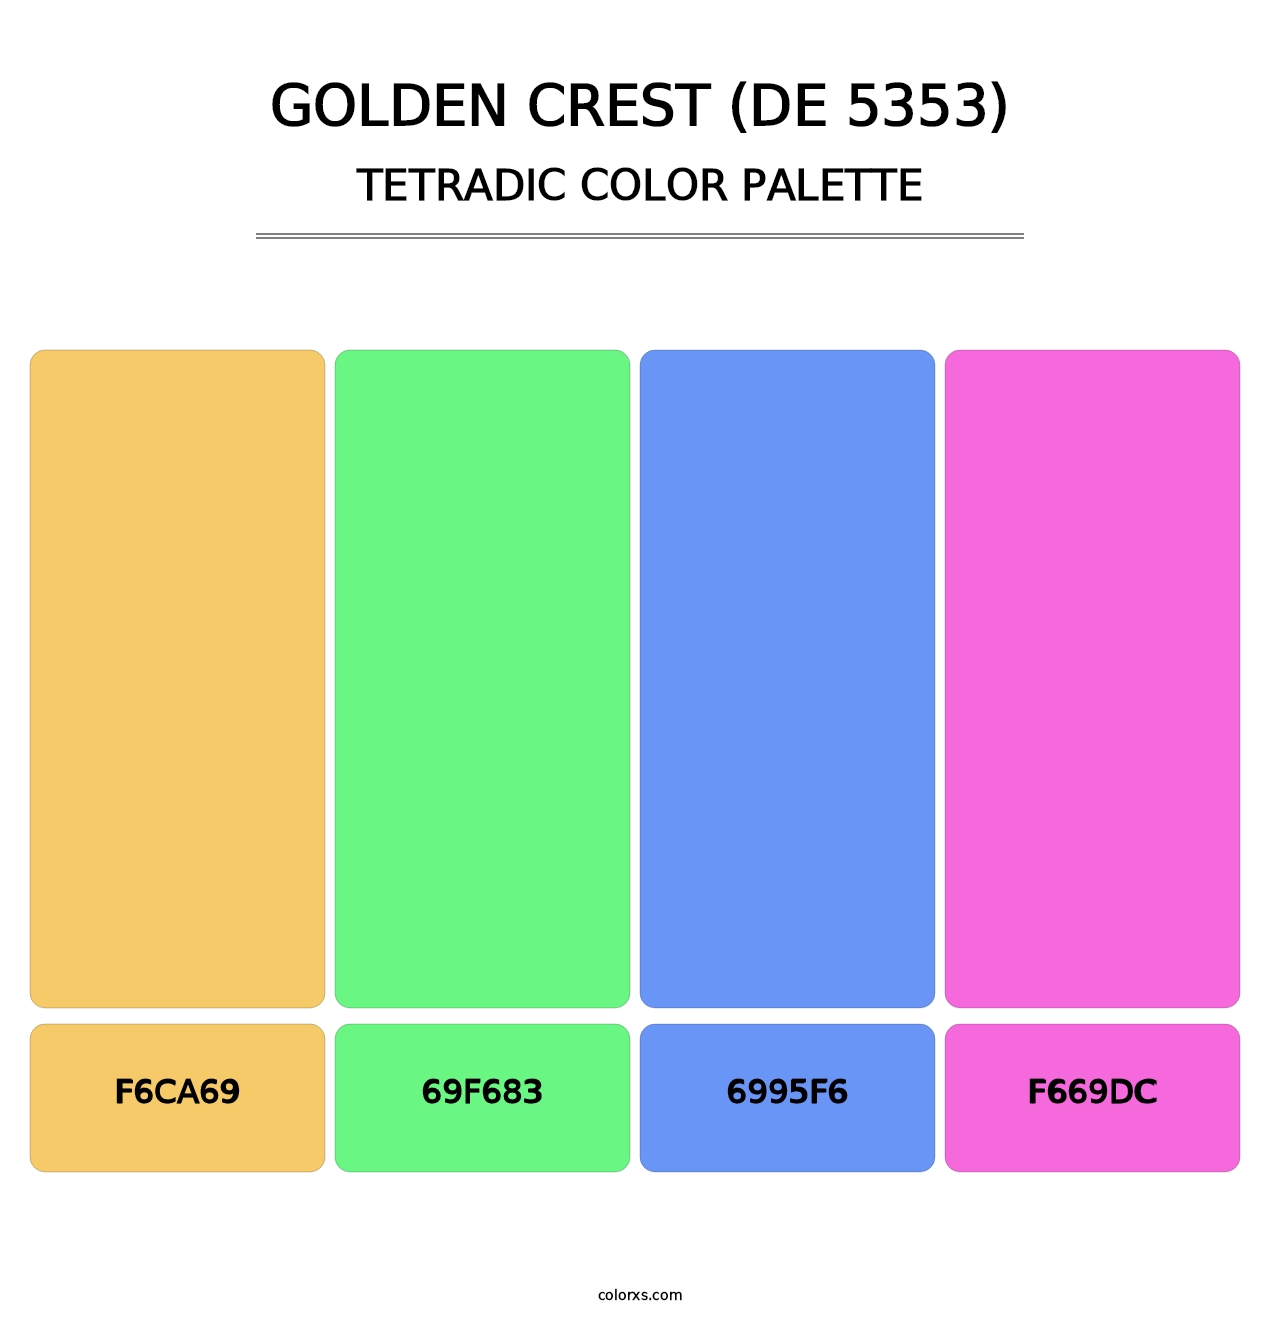 Golden Crest (DE 5353) - Tetradic Color Palette